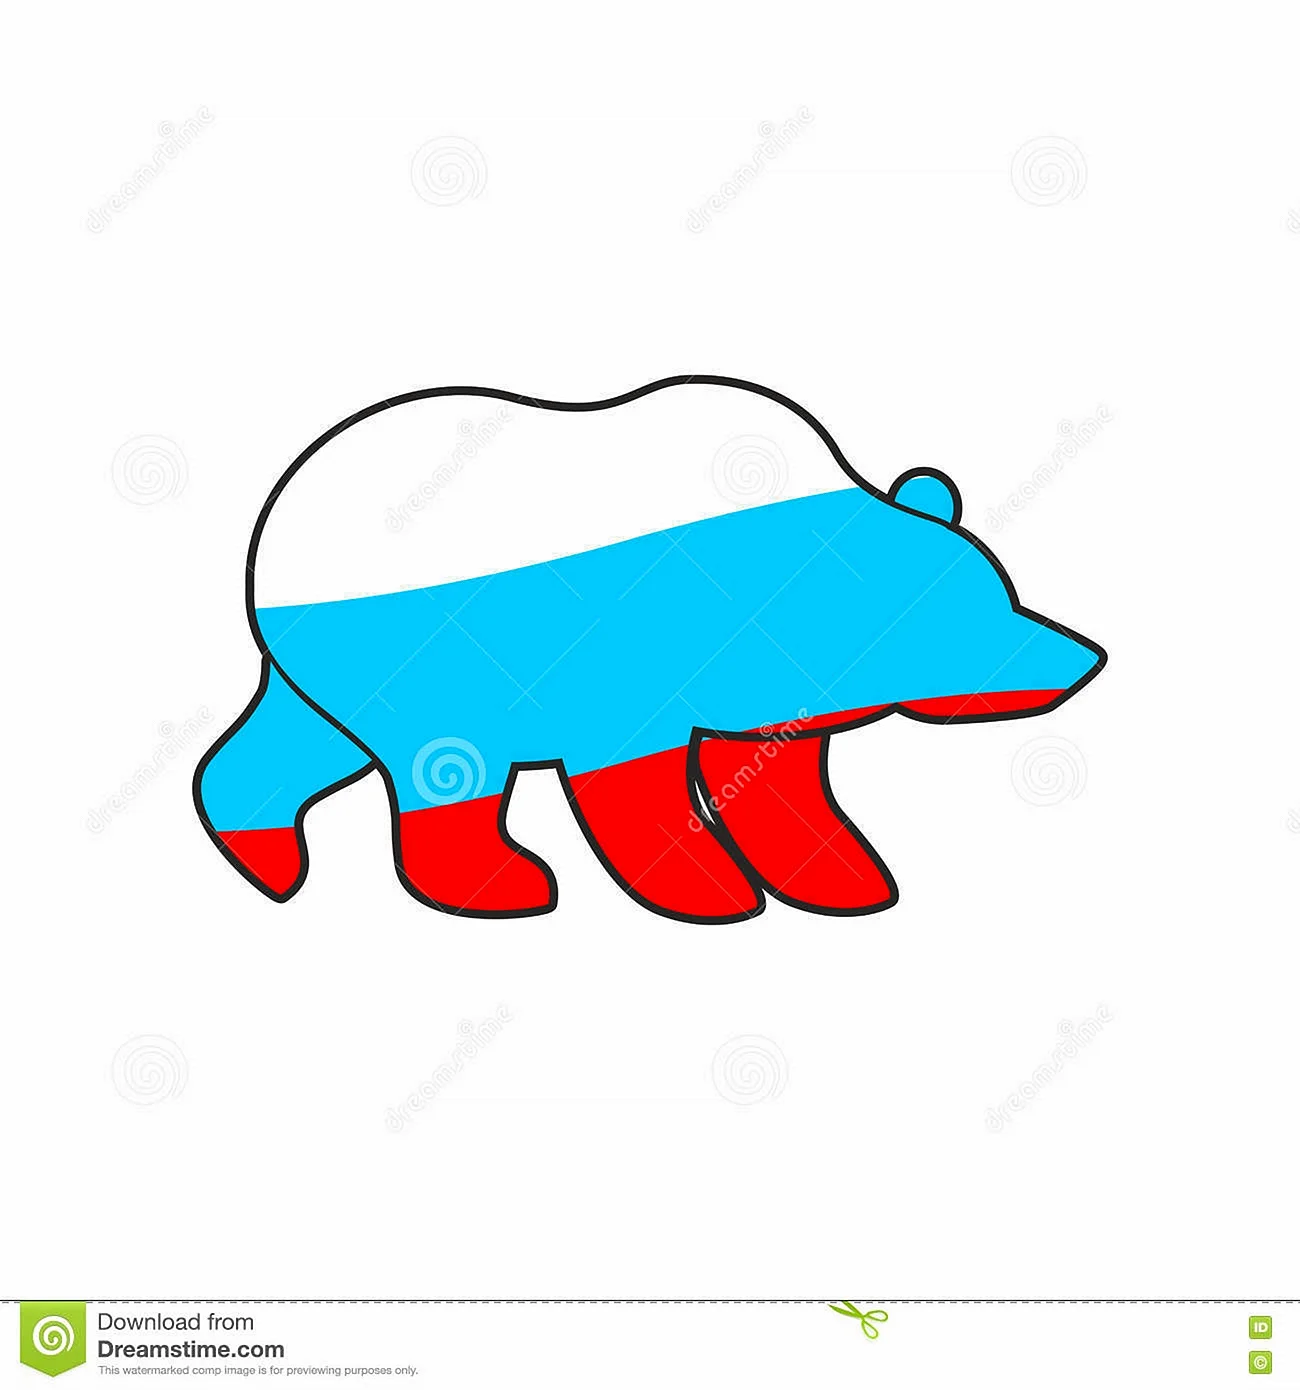 Медведь в цветах российского флага